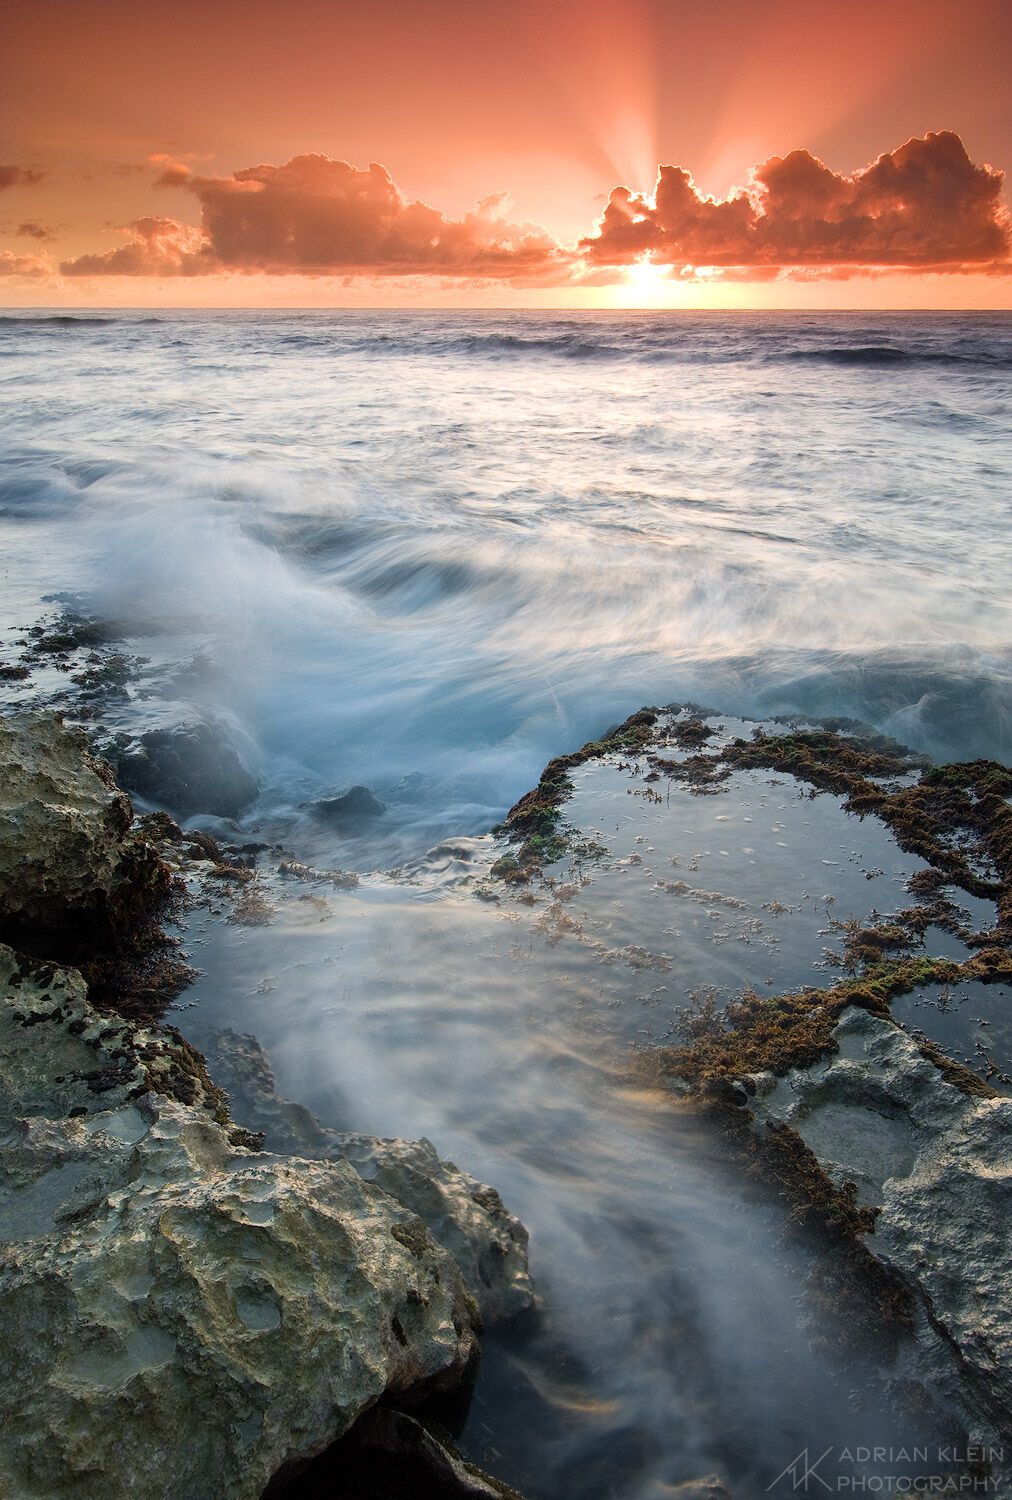 A magical sunrise on a very rocky shore on the south side of Kauai near Poipu.